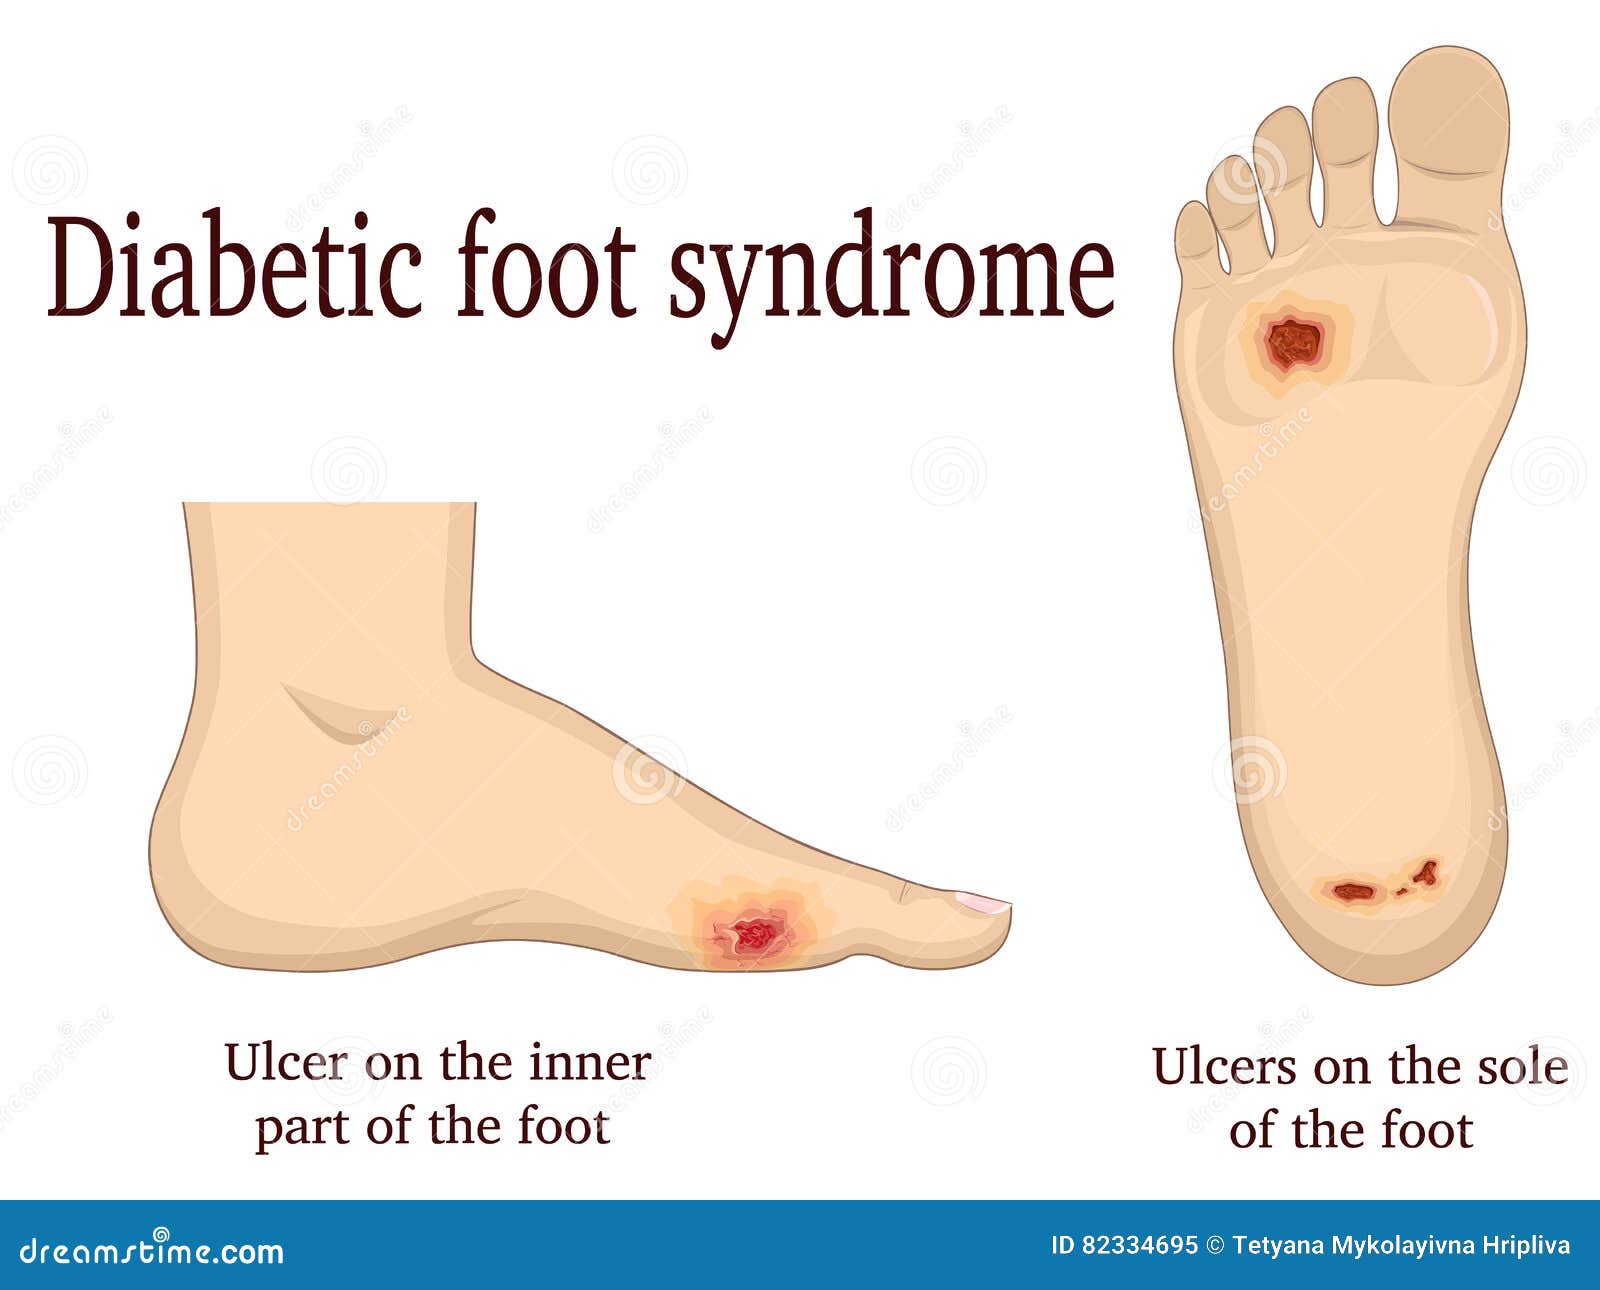 Fájl:Offene Wunde bei einem diabetischen Fußsyndrom.jpg